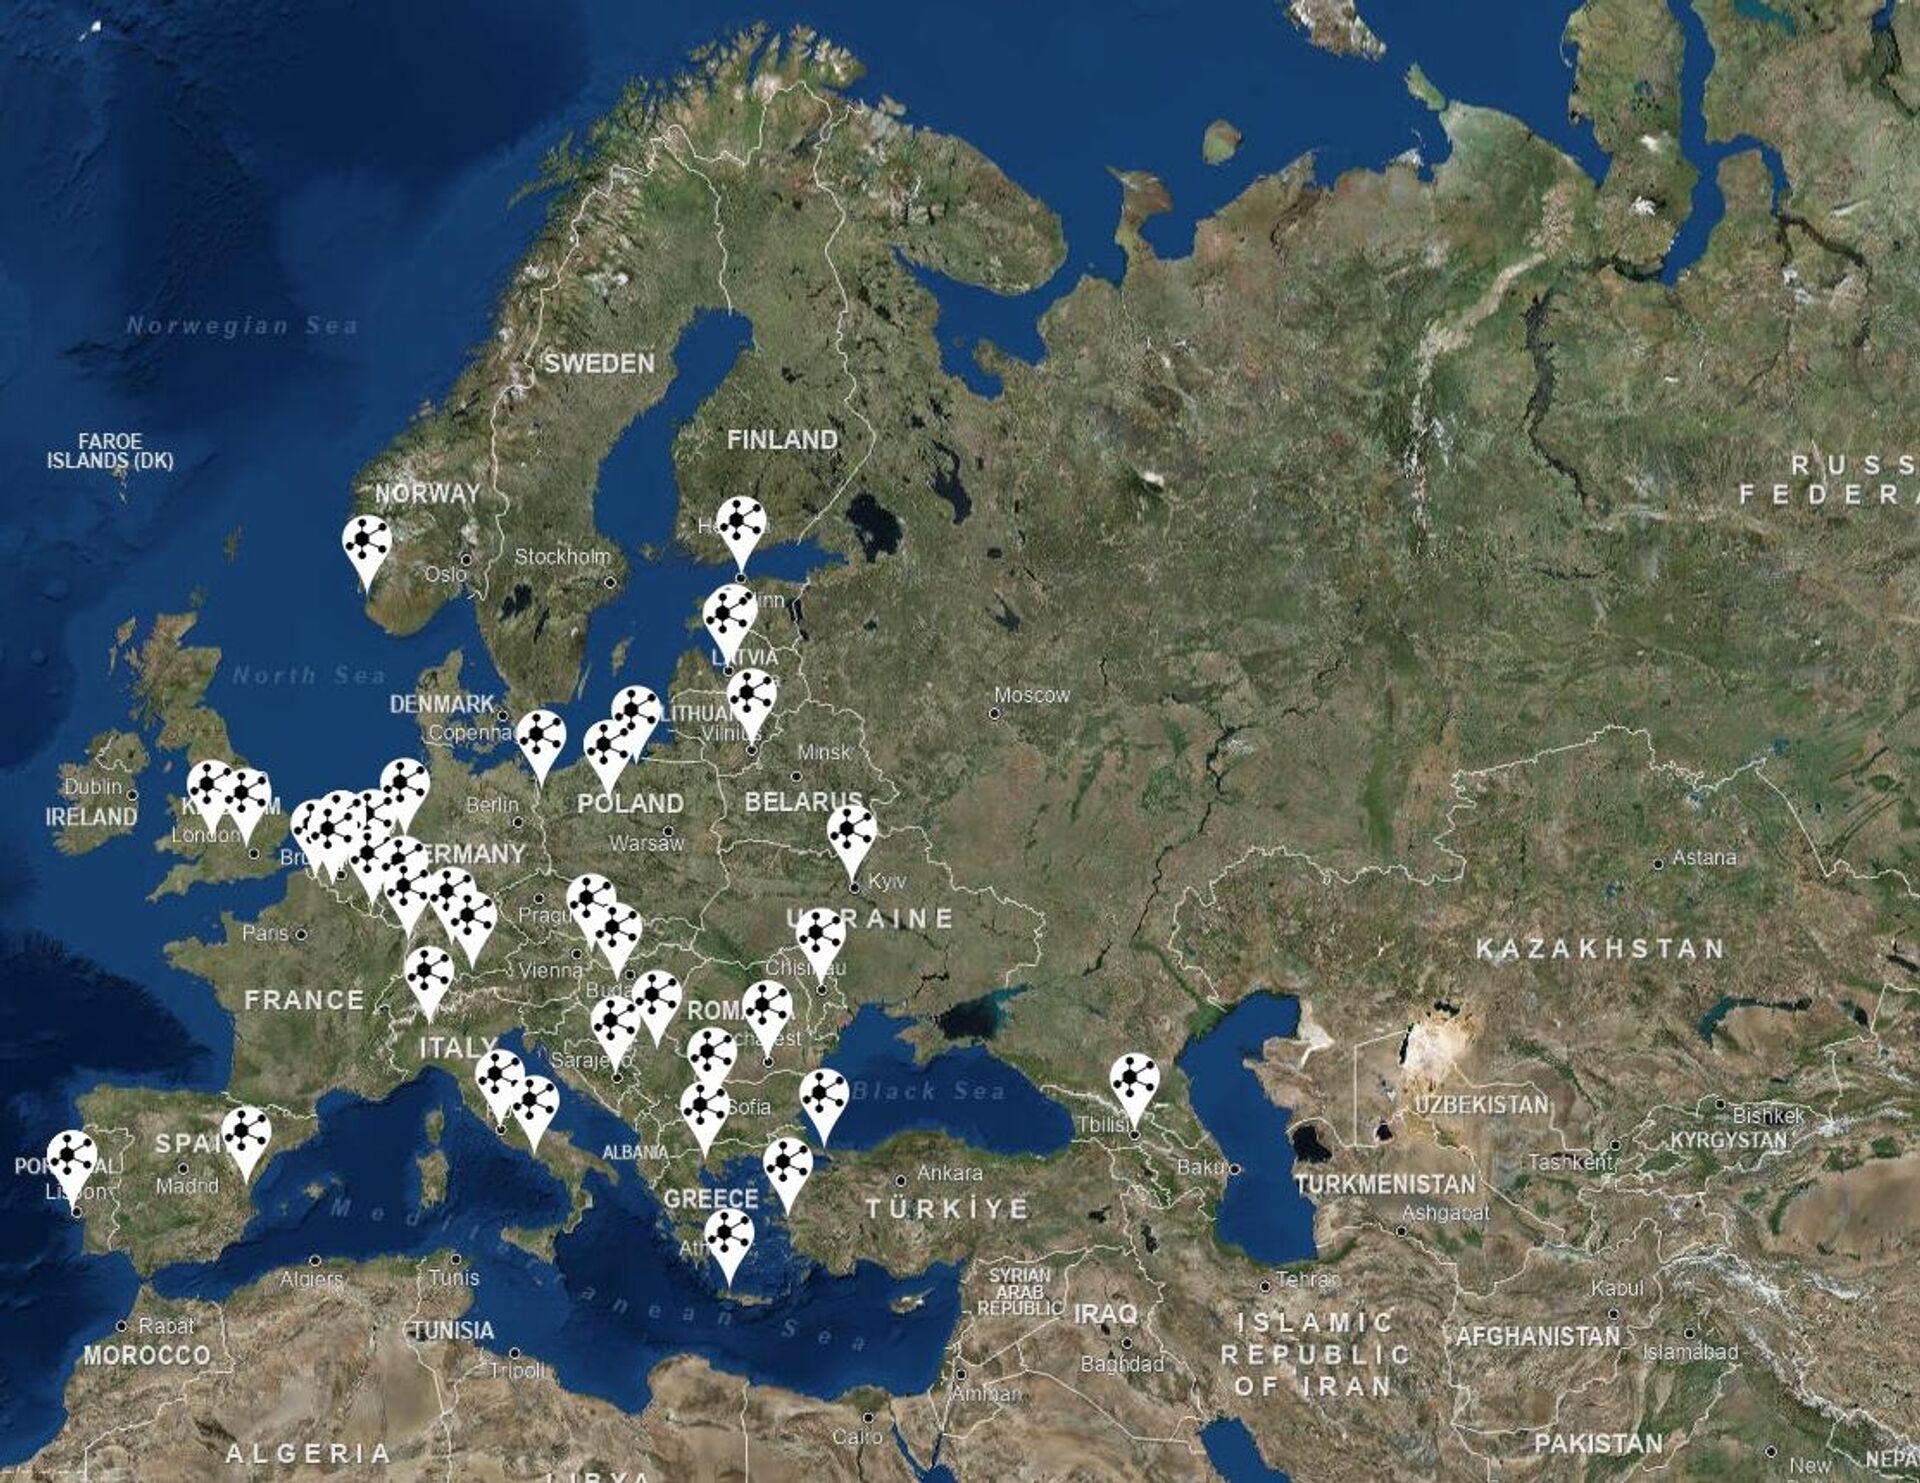 Bases militares y civiles de la OTAN en Europa, con base en datos actualizados a enero de 2023 - Sputnik Mundo, 1920, 31.01.2023